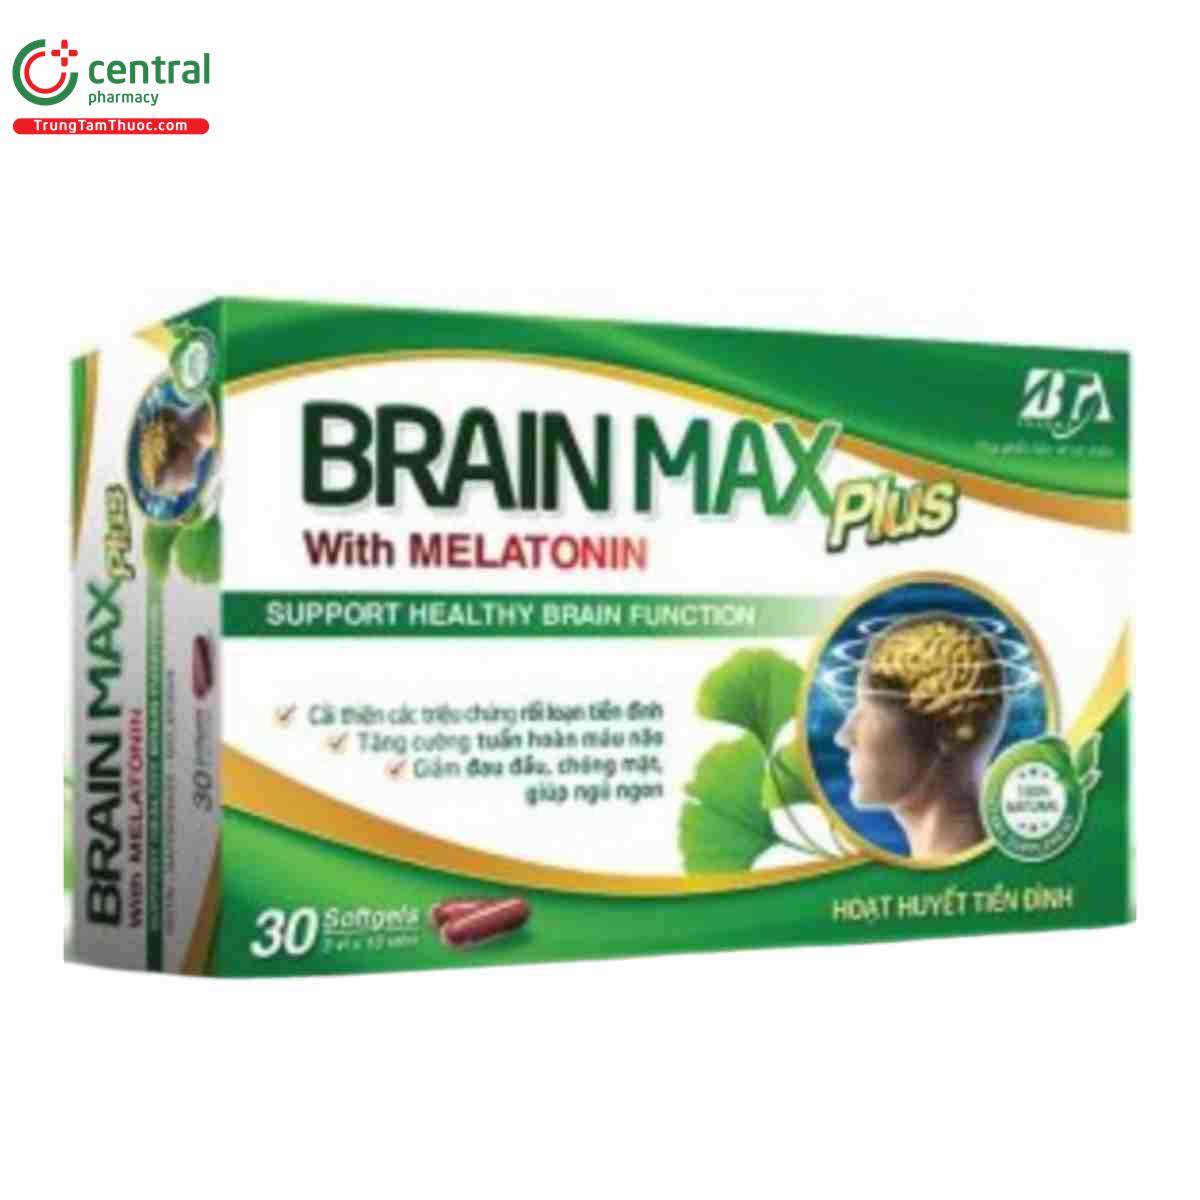 brain max plus with melatonin 2 P6881